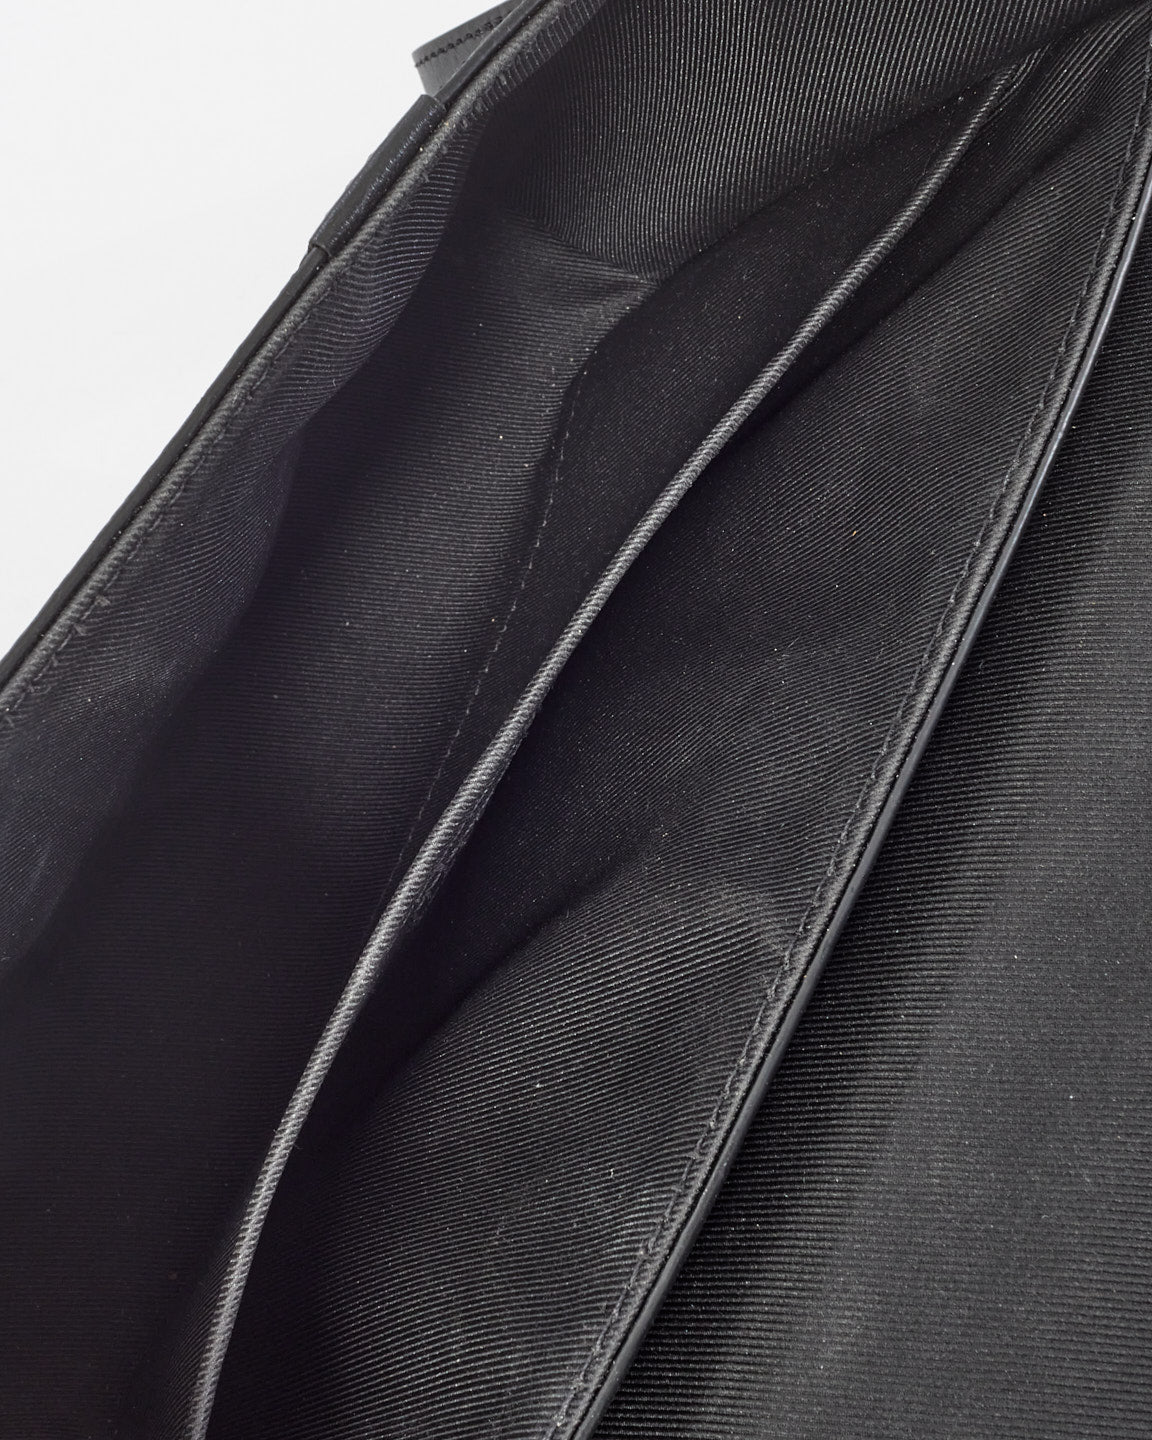 Louis Vuitton Eclipse Monogram Canvas Soft Trunk Flap Crossbody Bag